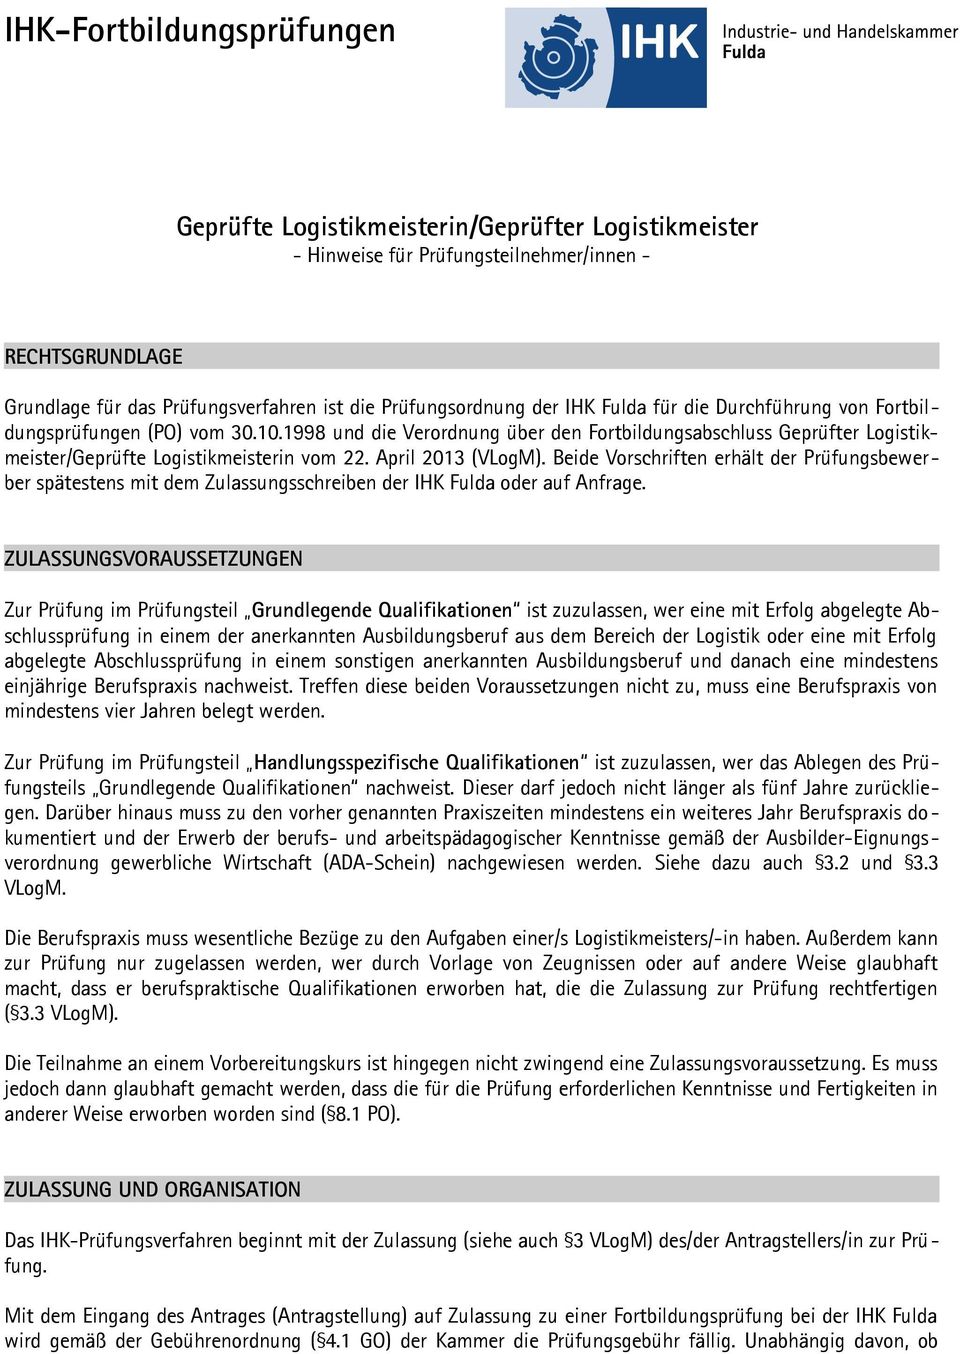 April 2013 (VLogM). Beide Vorschriften erhält der Prüfungsbewerber spätestens mit dem Zulassungsschreiben der IHK Fulda oder auf Anfrage.